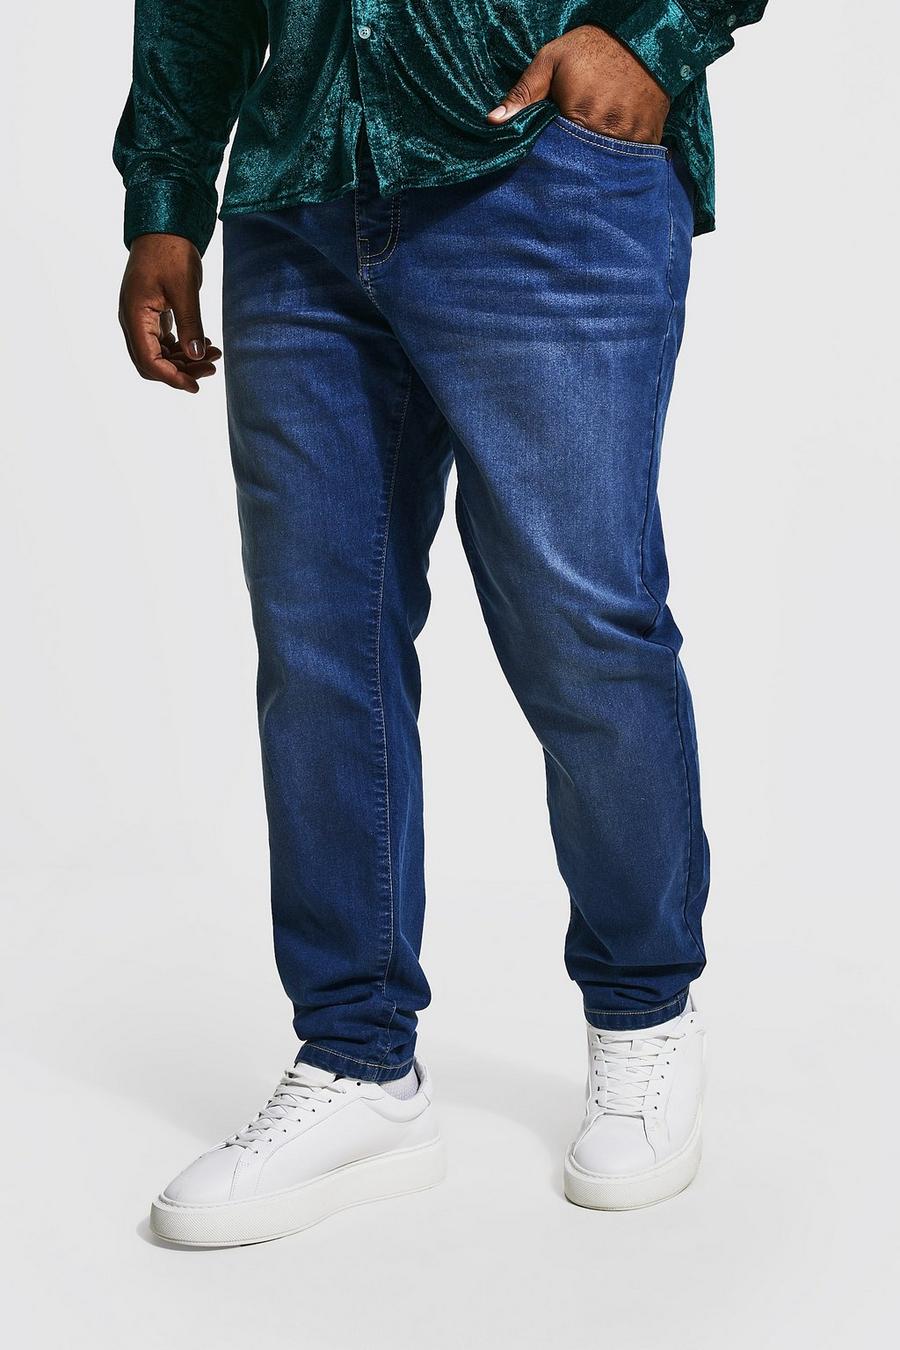 כחול ביניים azzurro סקיני ג'ינס נמתח בשילוב פוליאסטר ממוחזר, מידות גדולות